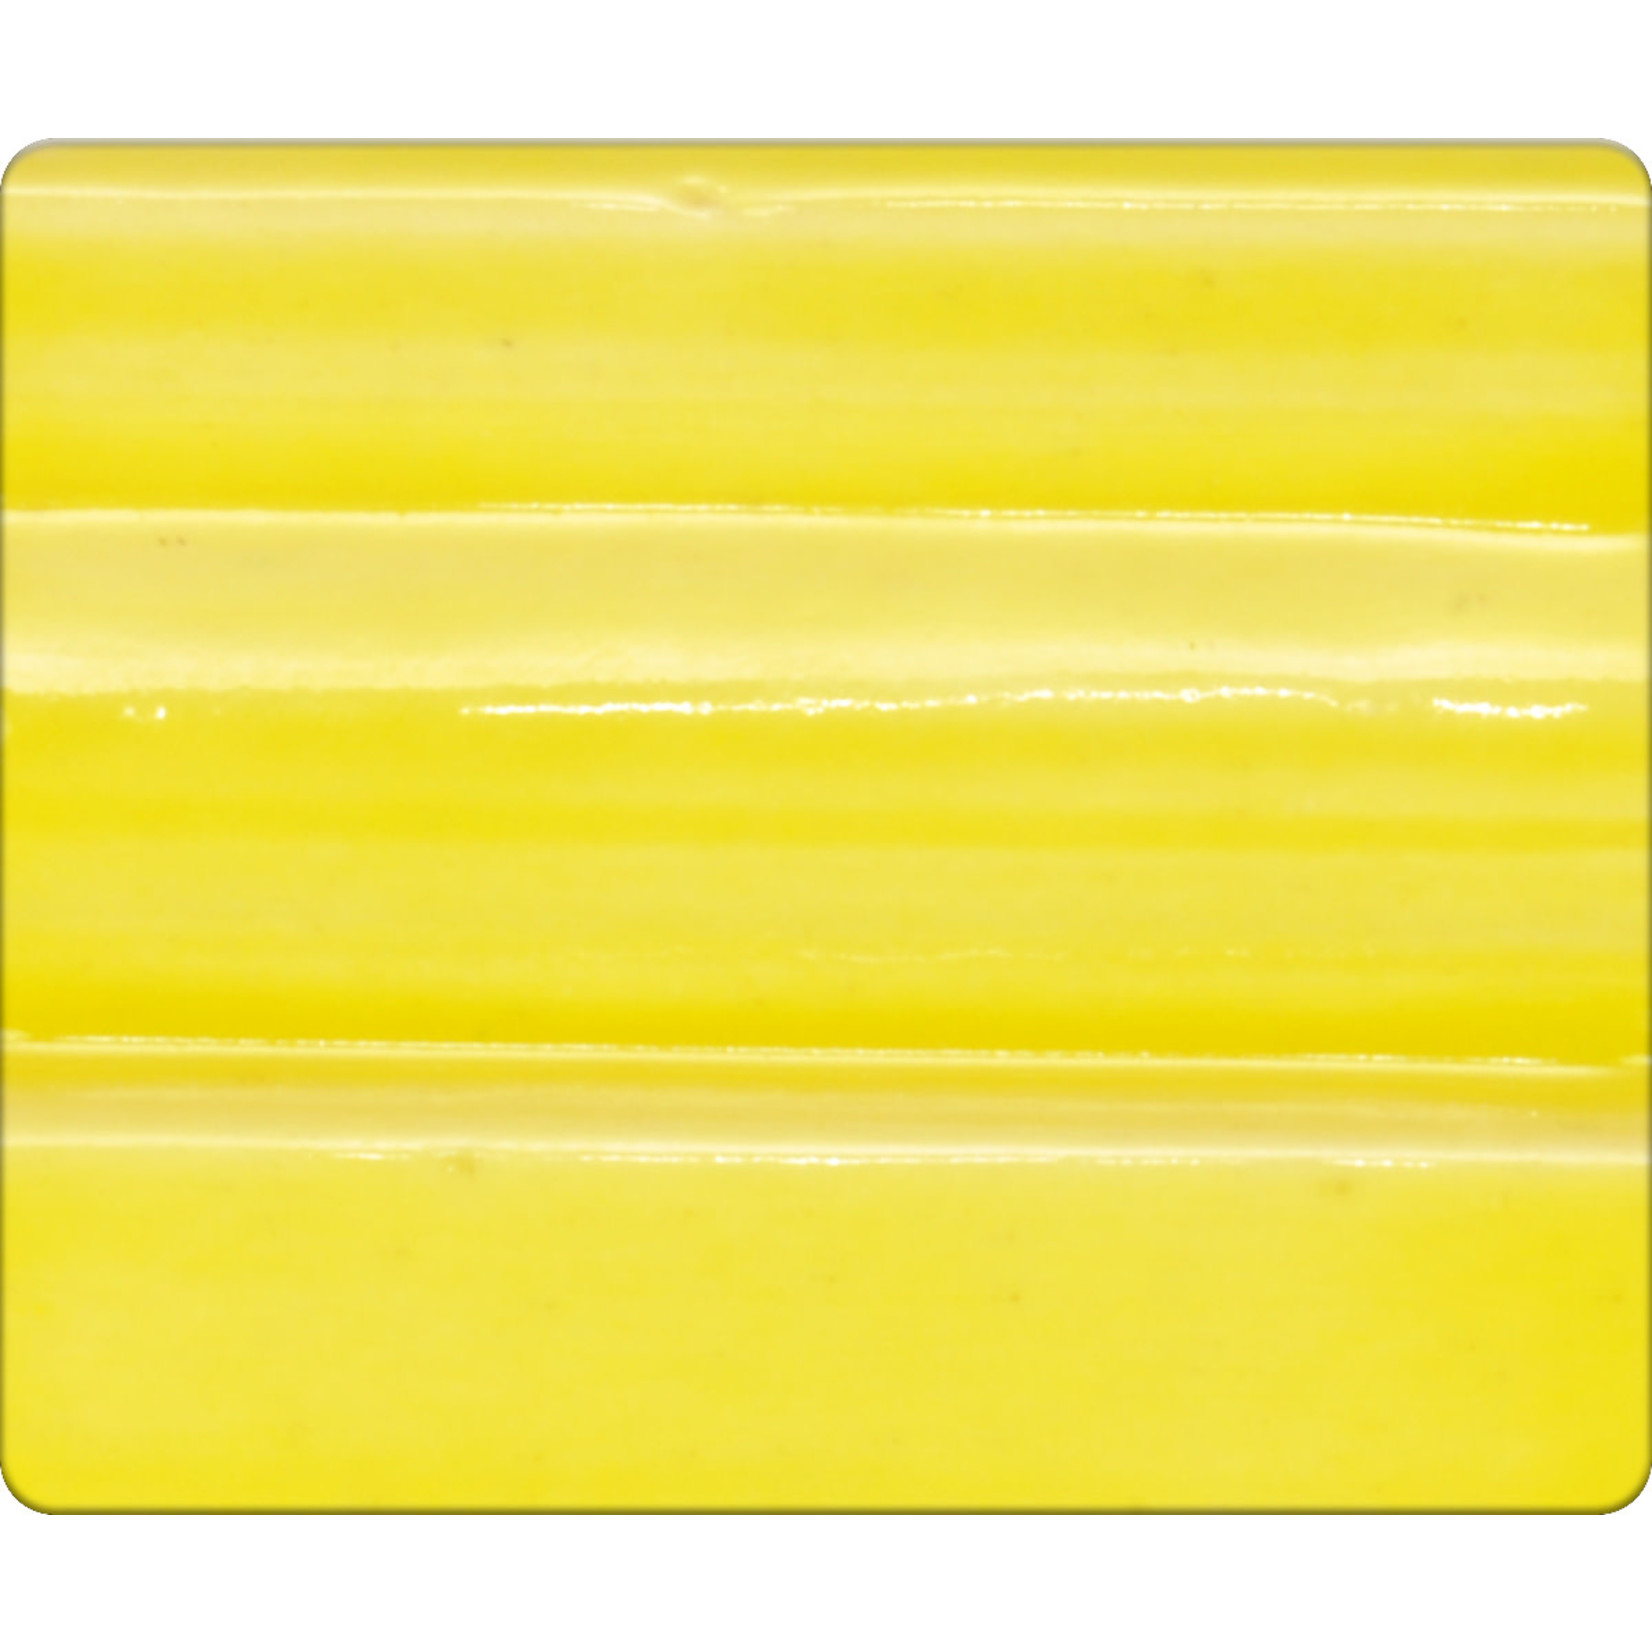 Spectrum Sp1108 - Butter Yellow ^5-6 (Pint)